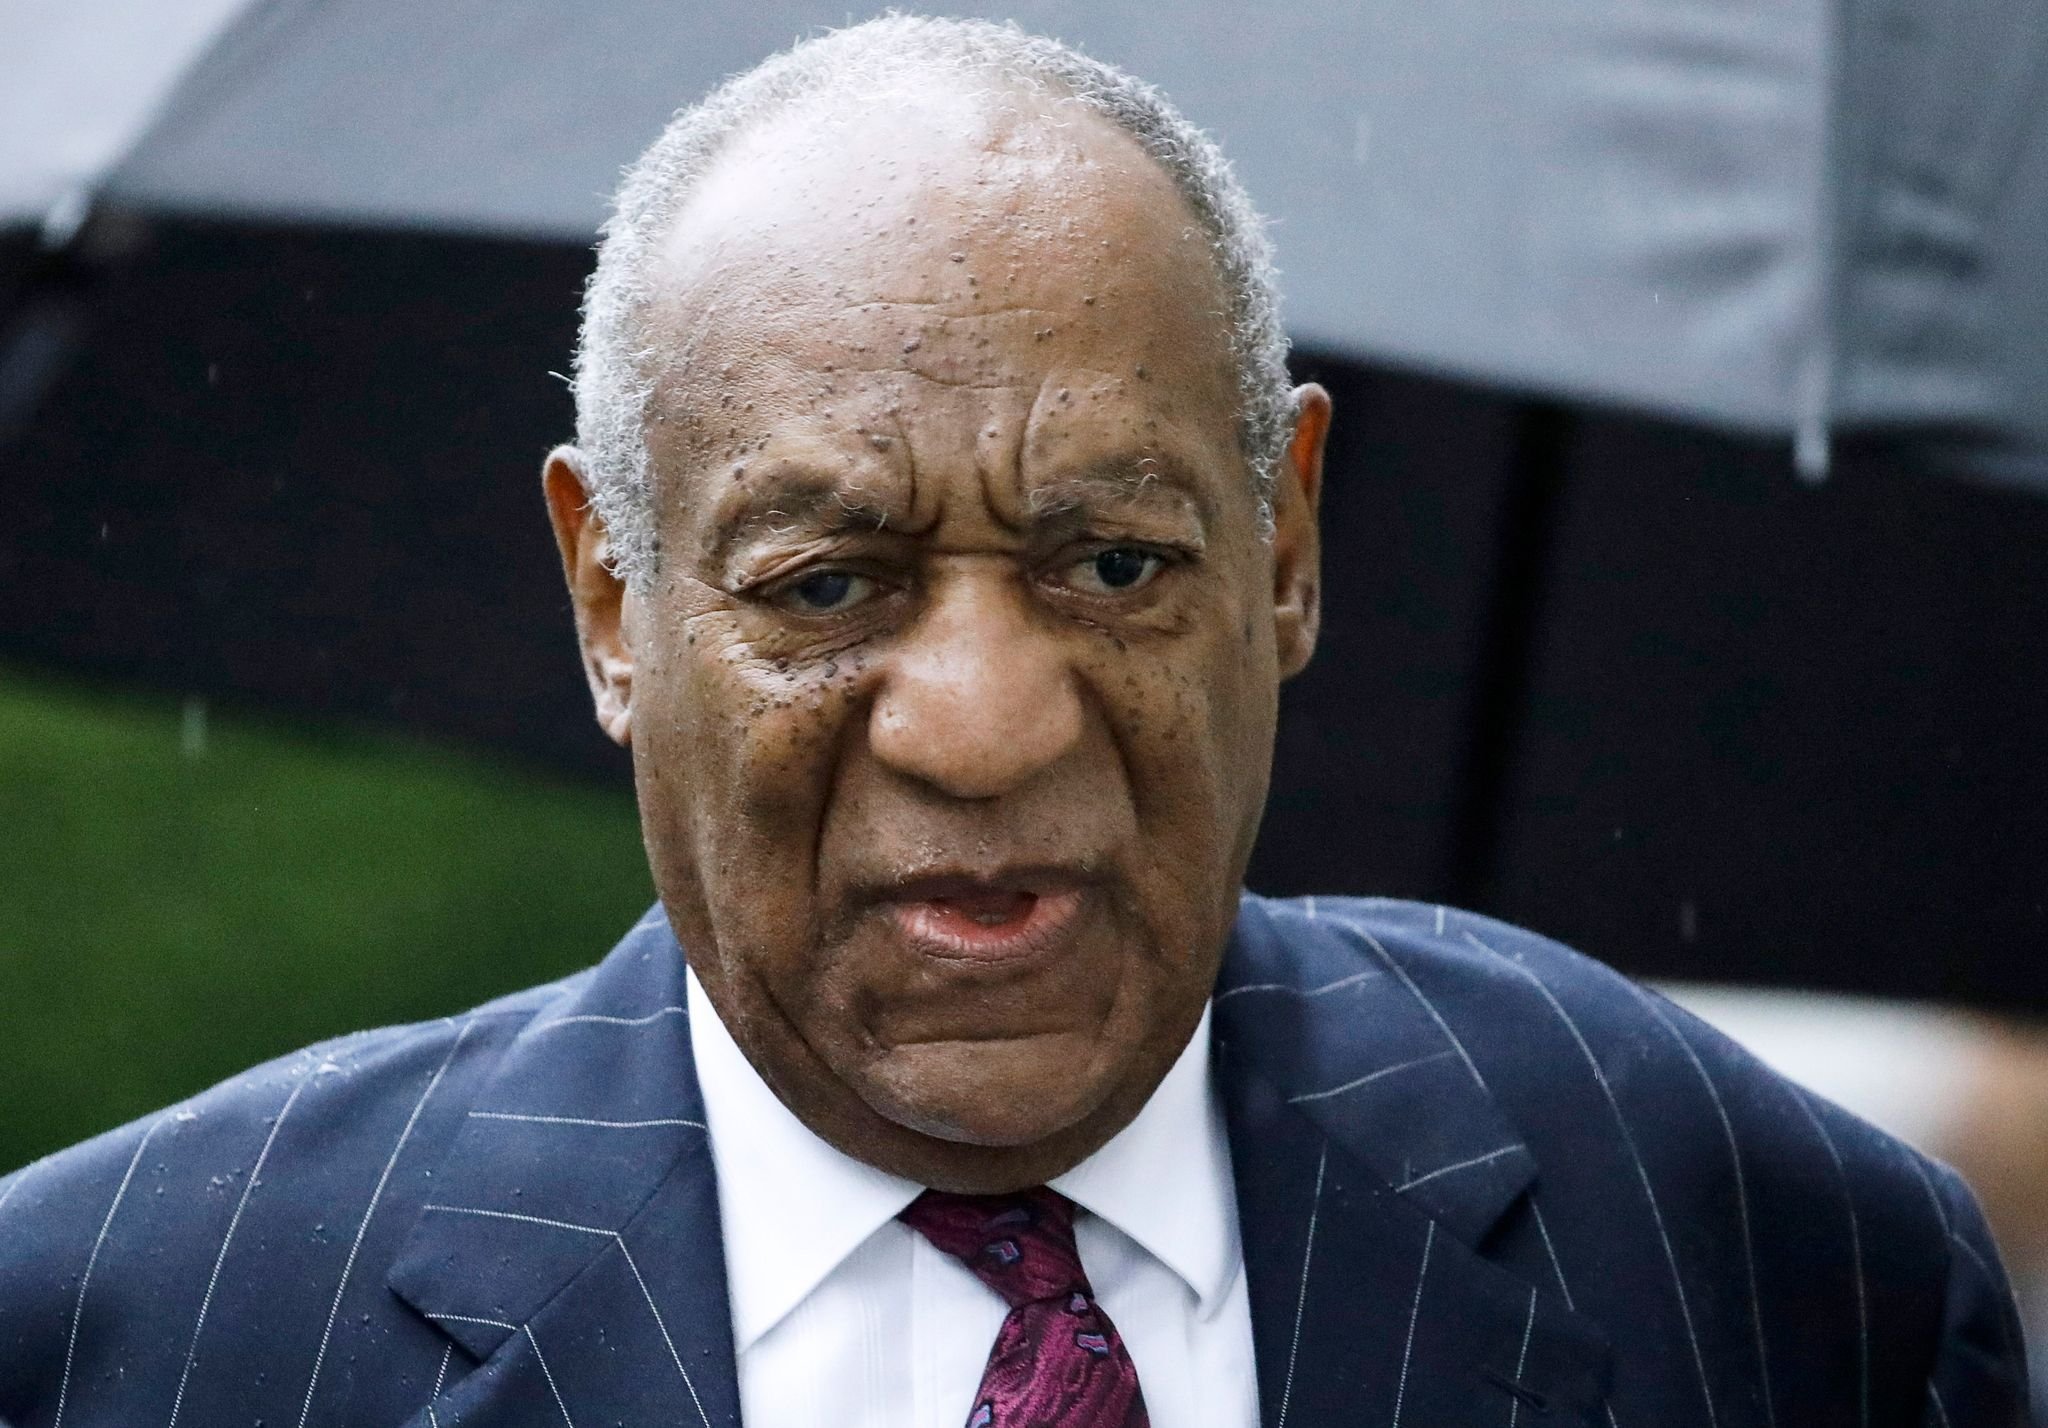 Zivilklage gegen Bill Cosby wegen sexuellen Missbrauchs